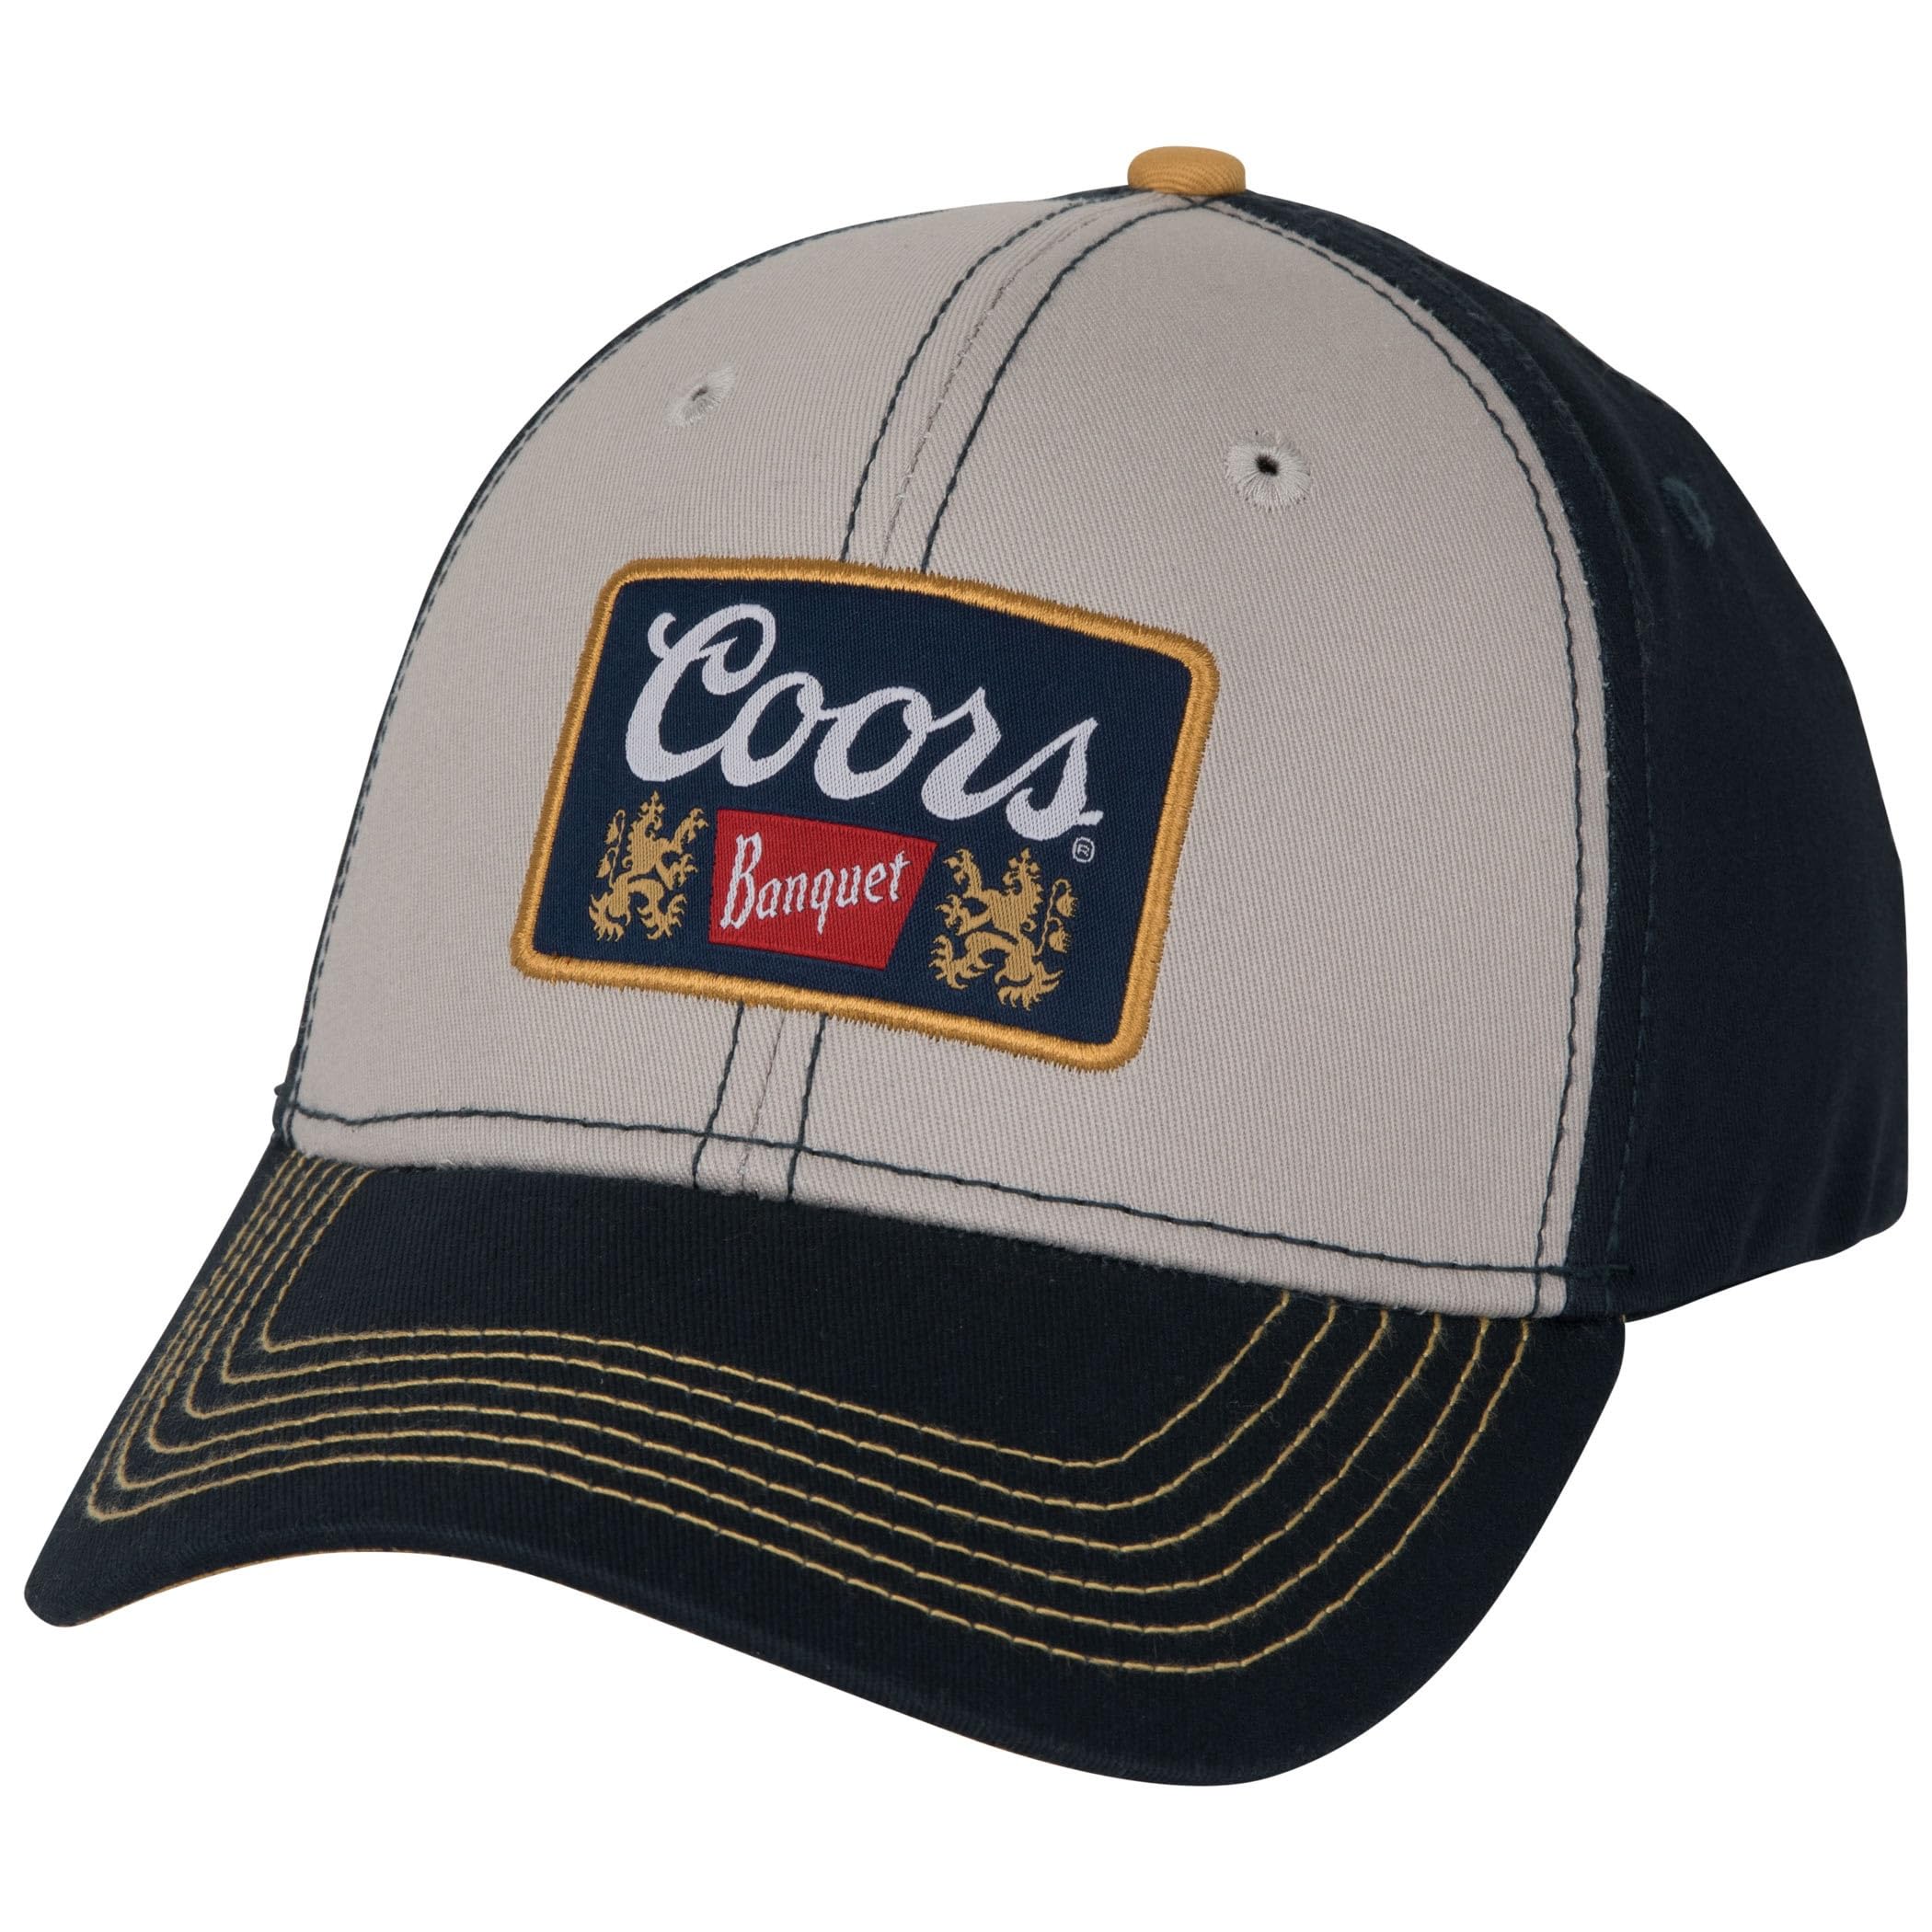 送料無料Coors Banquet Mens Adjustable Snapback Twill Baseball Cap with Patch Logo One Size Navy並行輸入品